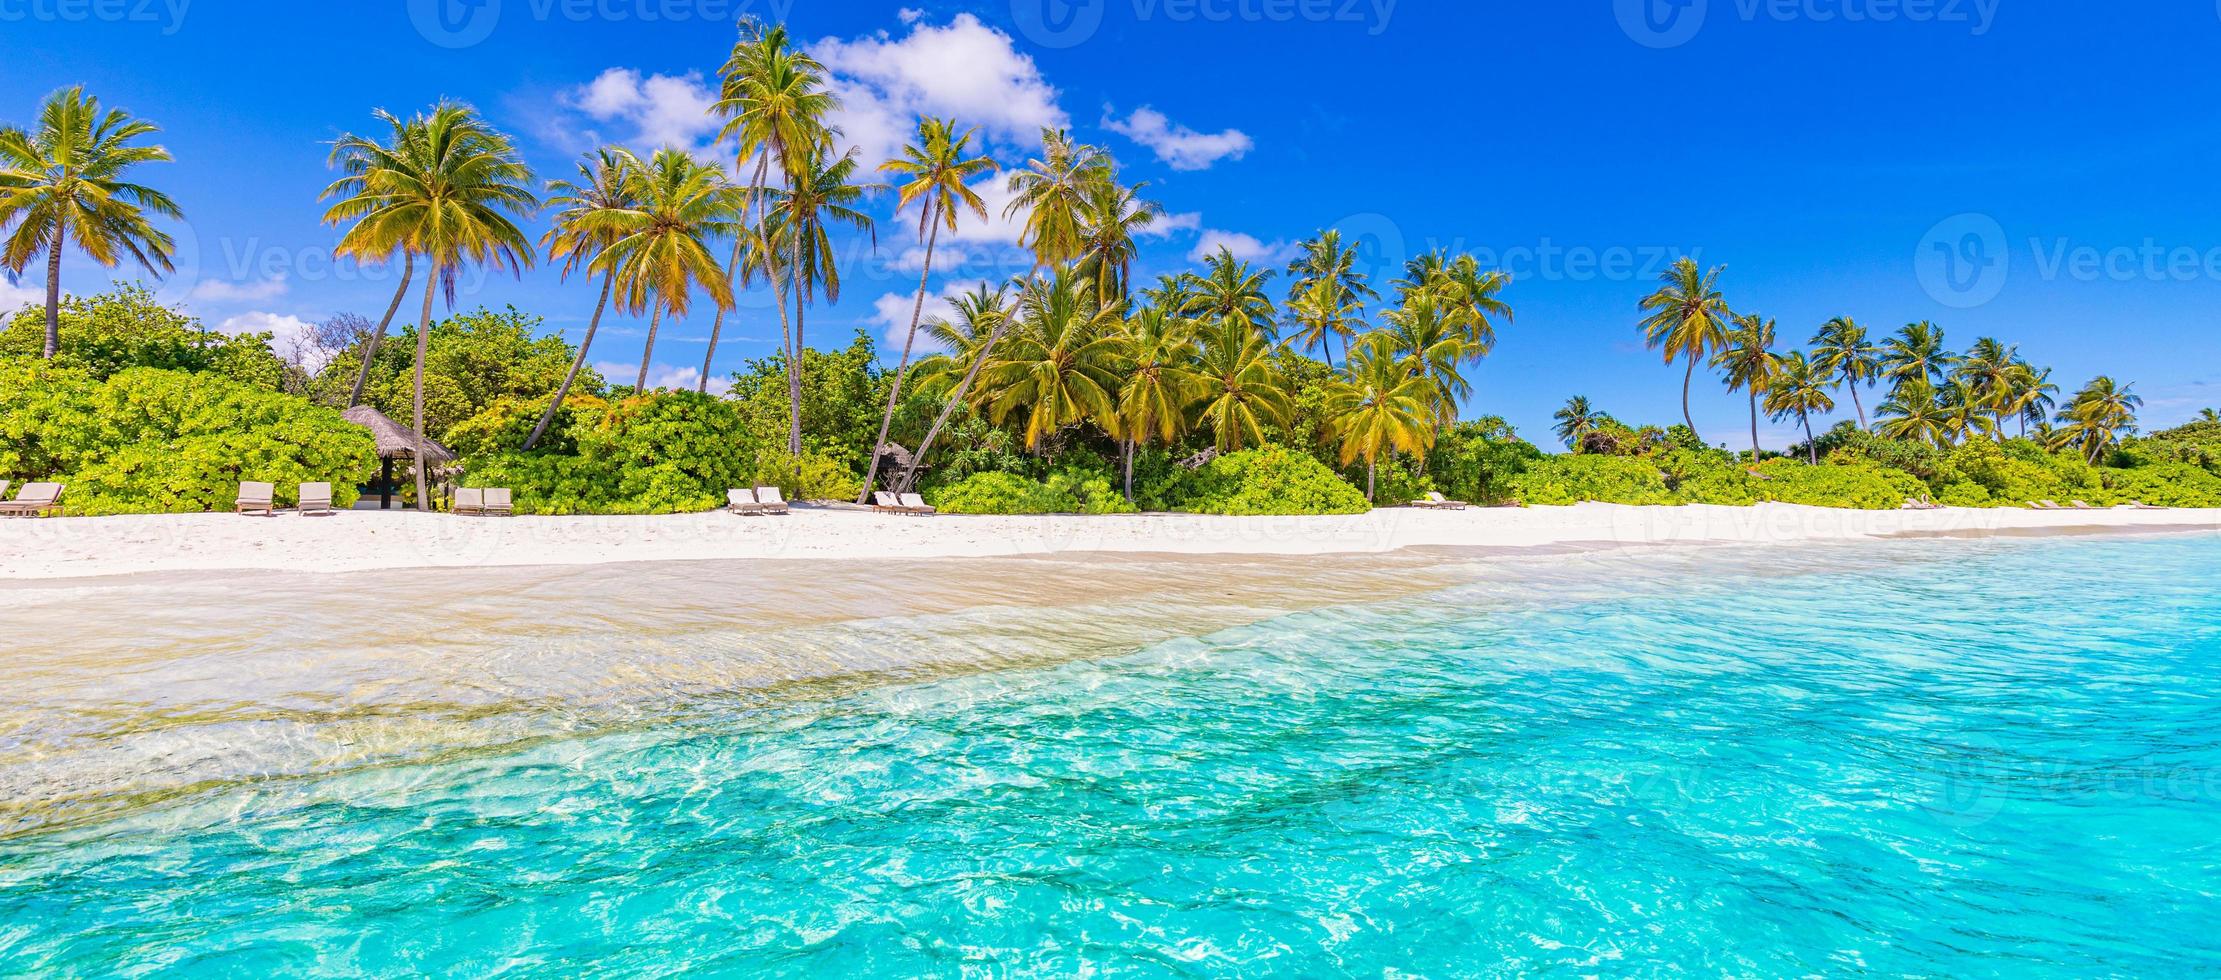 panoramisch Maldiven eiland strand. tropisch landschap zomer panorama, wit zand met palmbomen zee. luxe reizen vakantiebestemming. exotisch strandlandschap. geweldige natuur, relax, vrijheid natuur foto